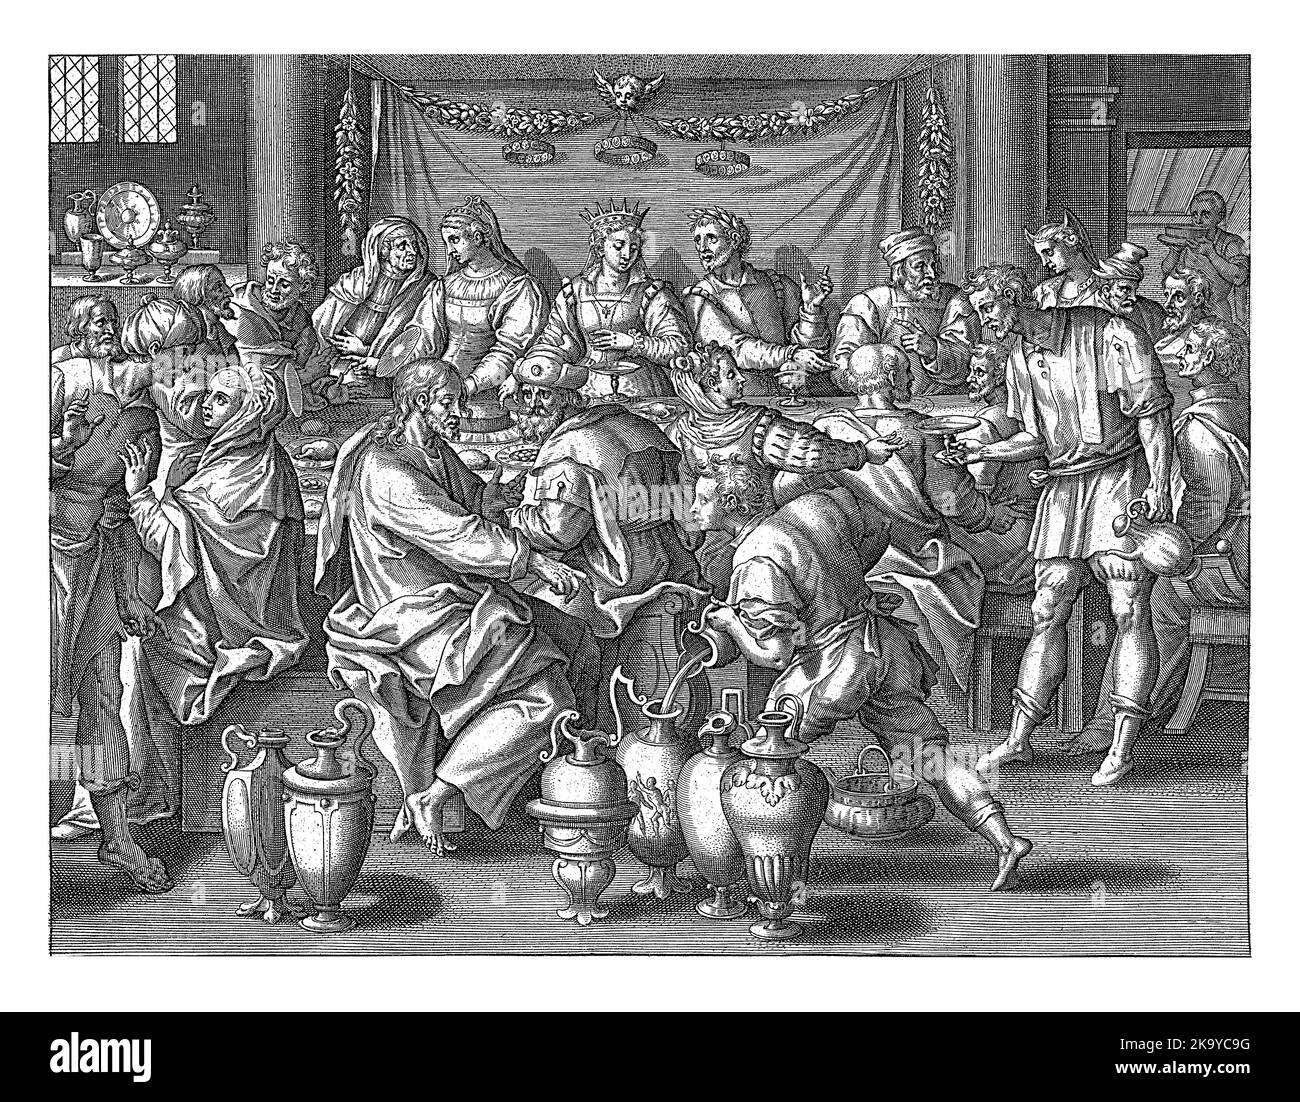 Au mariage de Cana, Christ ordonne que six cruches soient remplies d'eau. Puis il transforme l'eau en vin. Banque D'Images